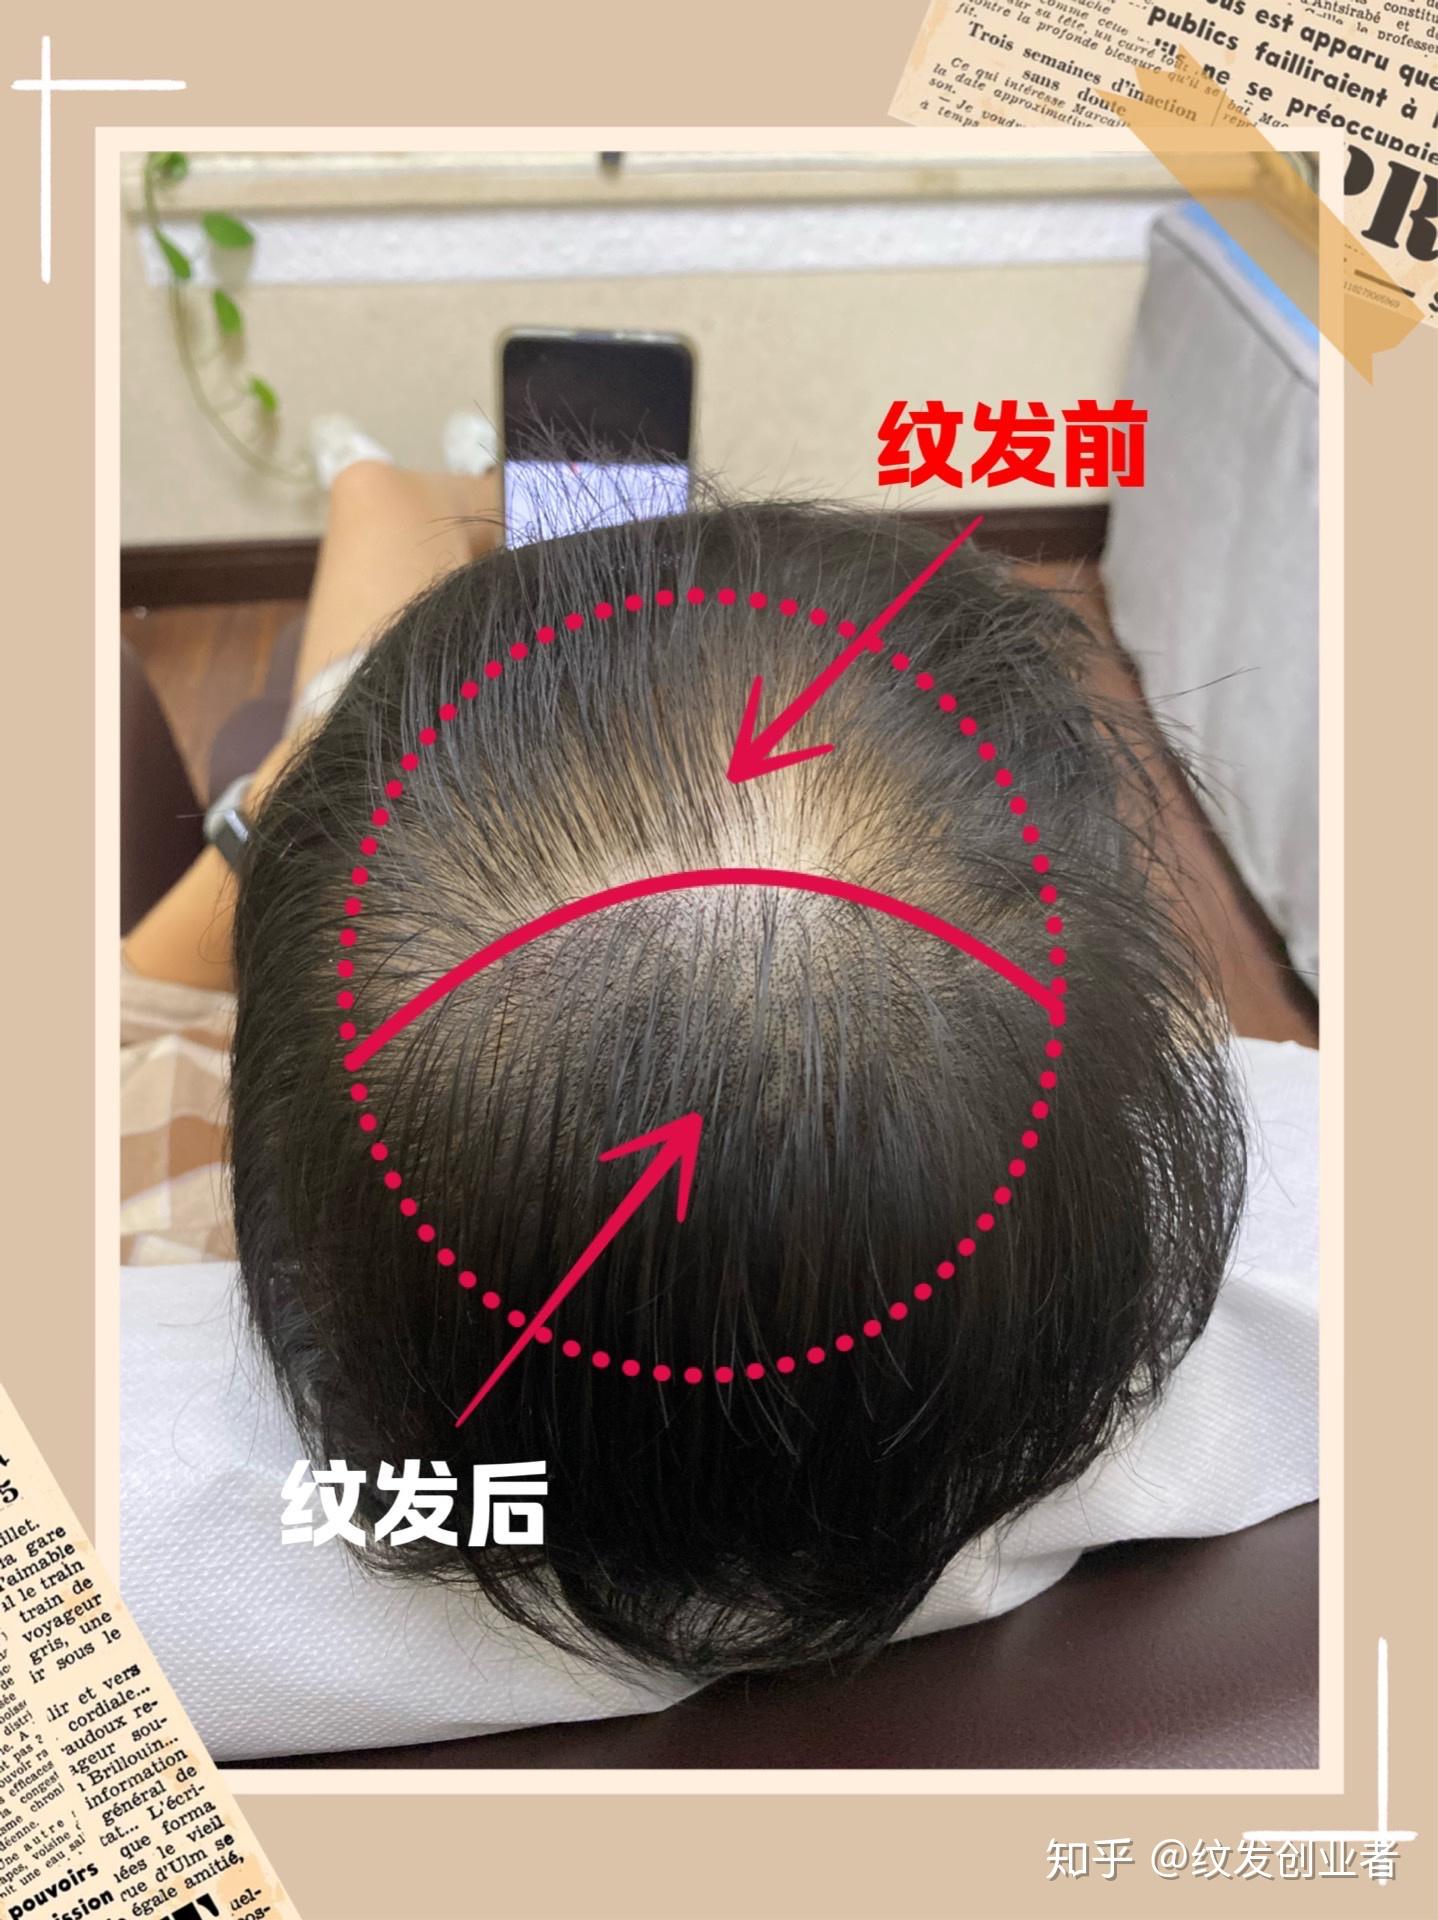 对照假发发量标准,3d纹发可以达到掩饰脱发的目的吗?